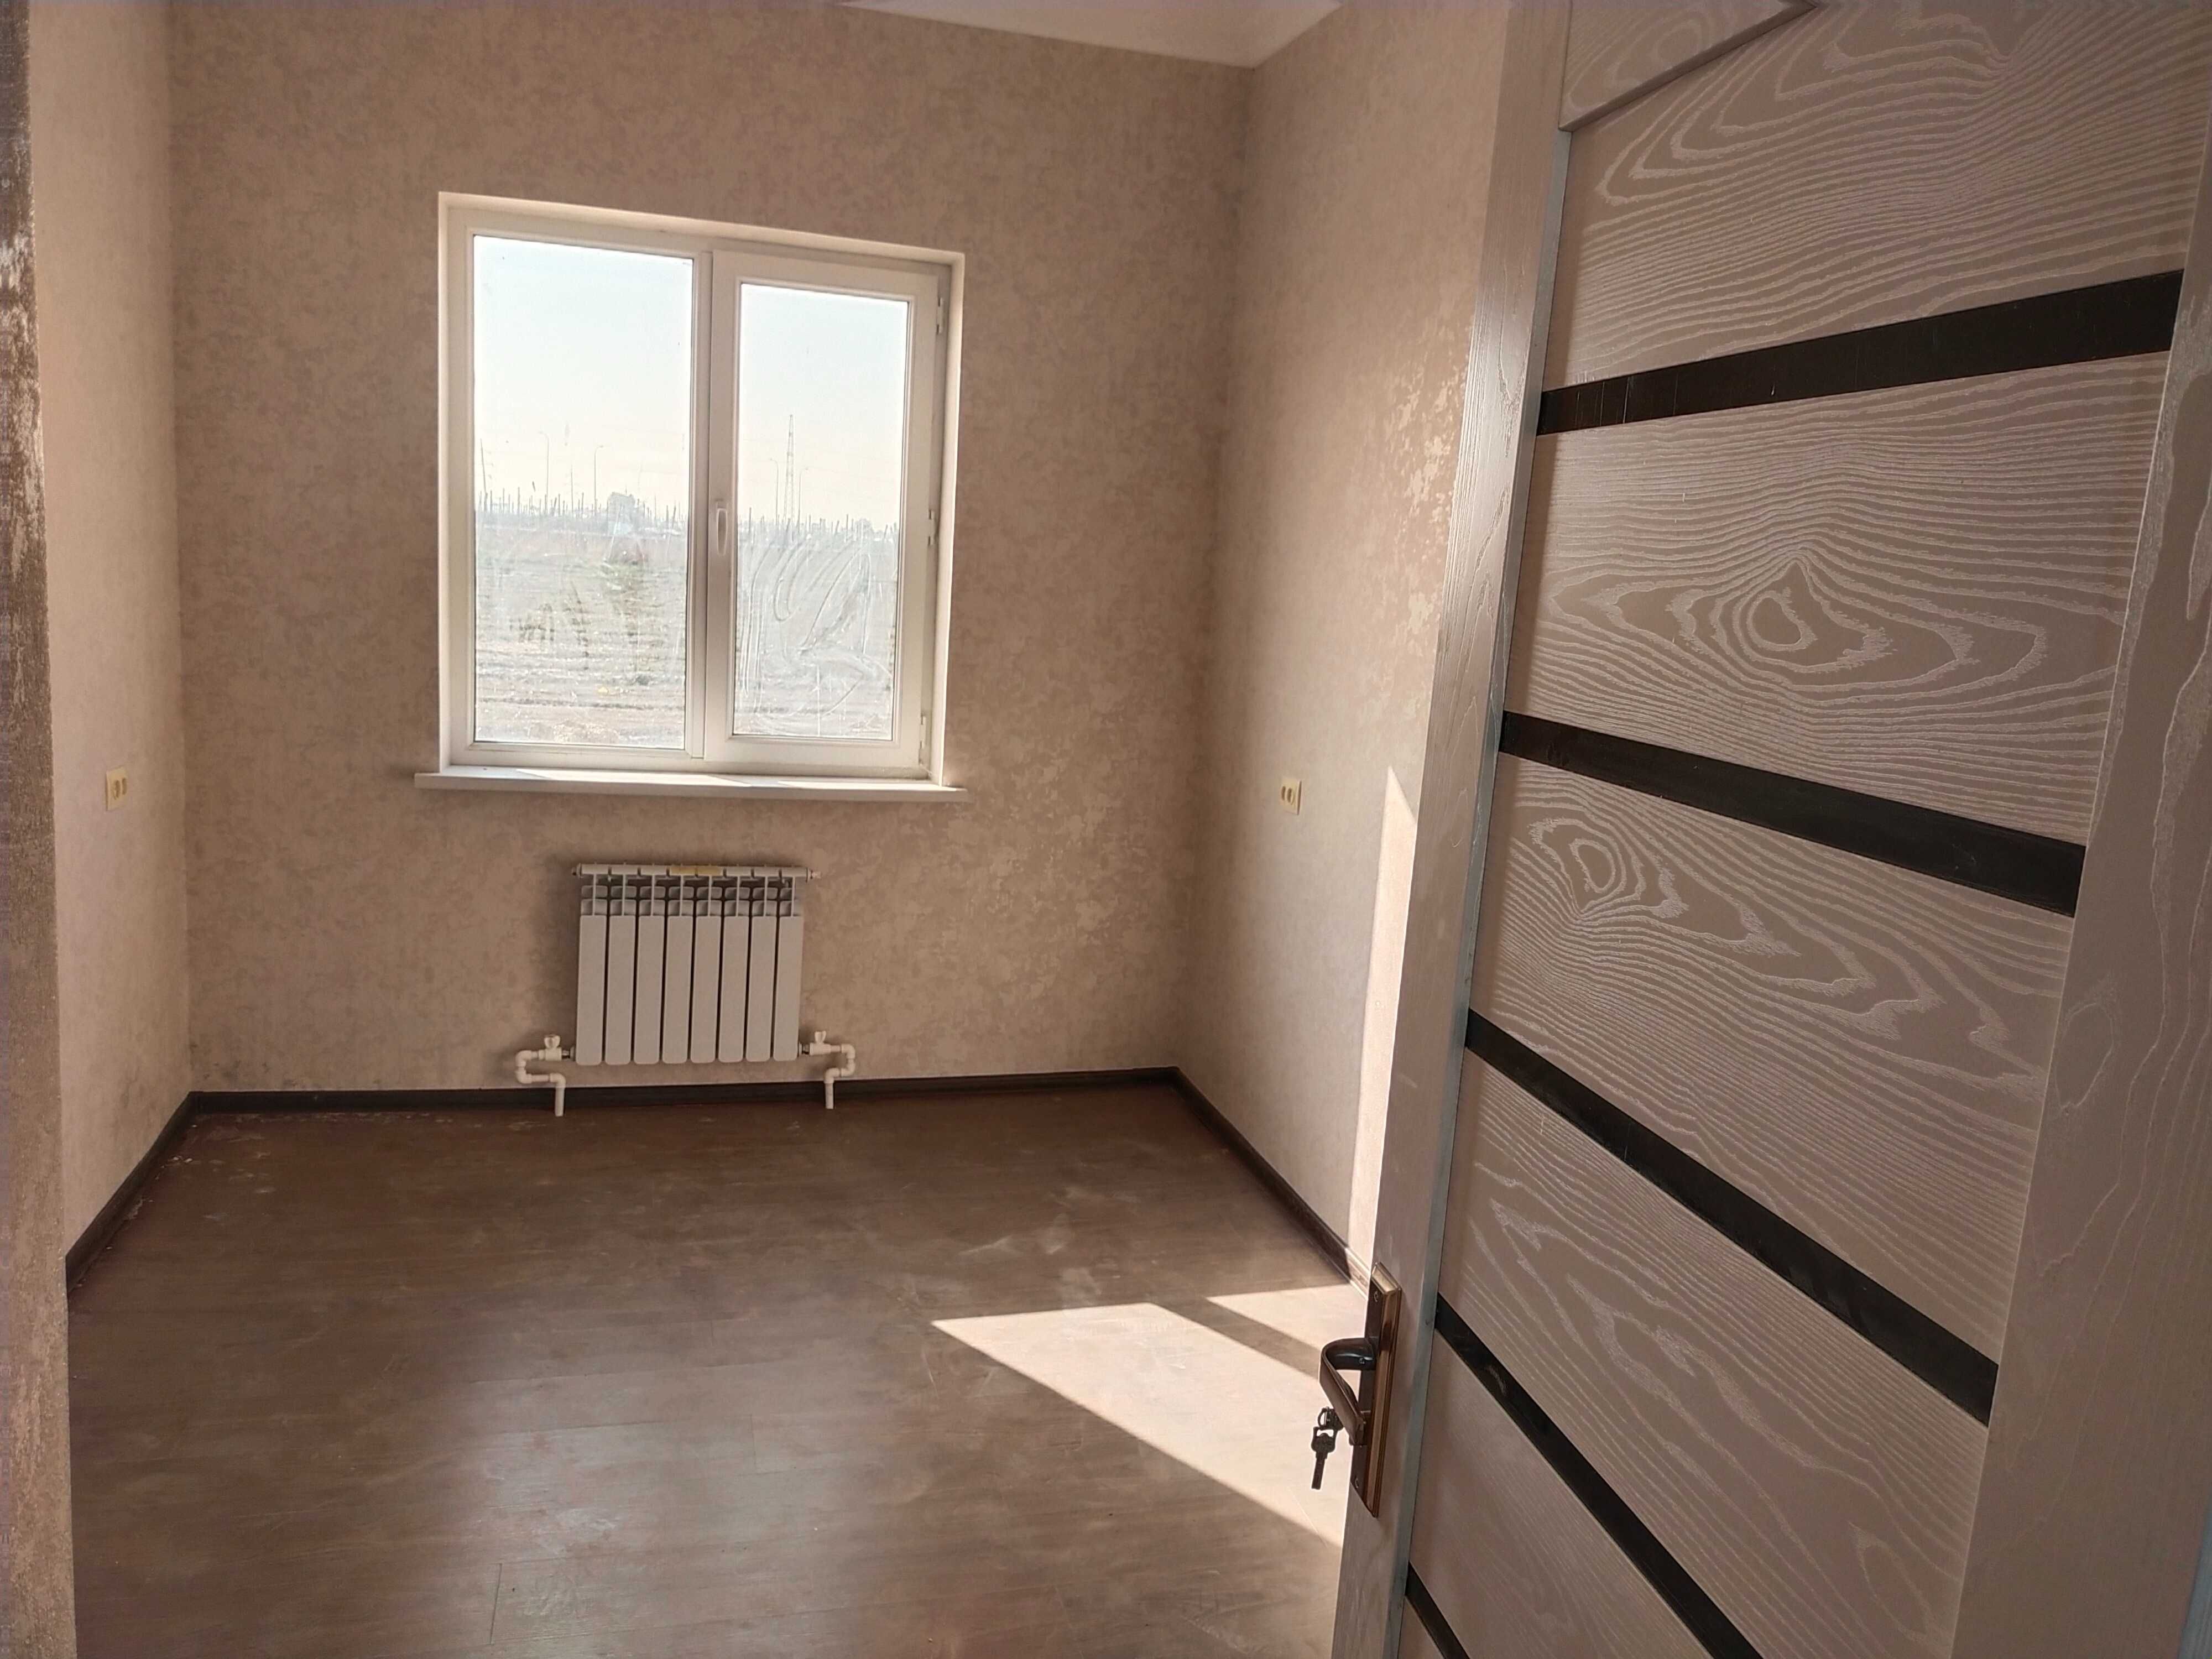 Продается дом в элитном коттеджном поселке в Кибрайском районе. Дурмон